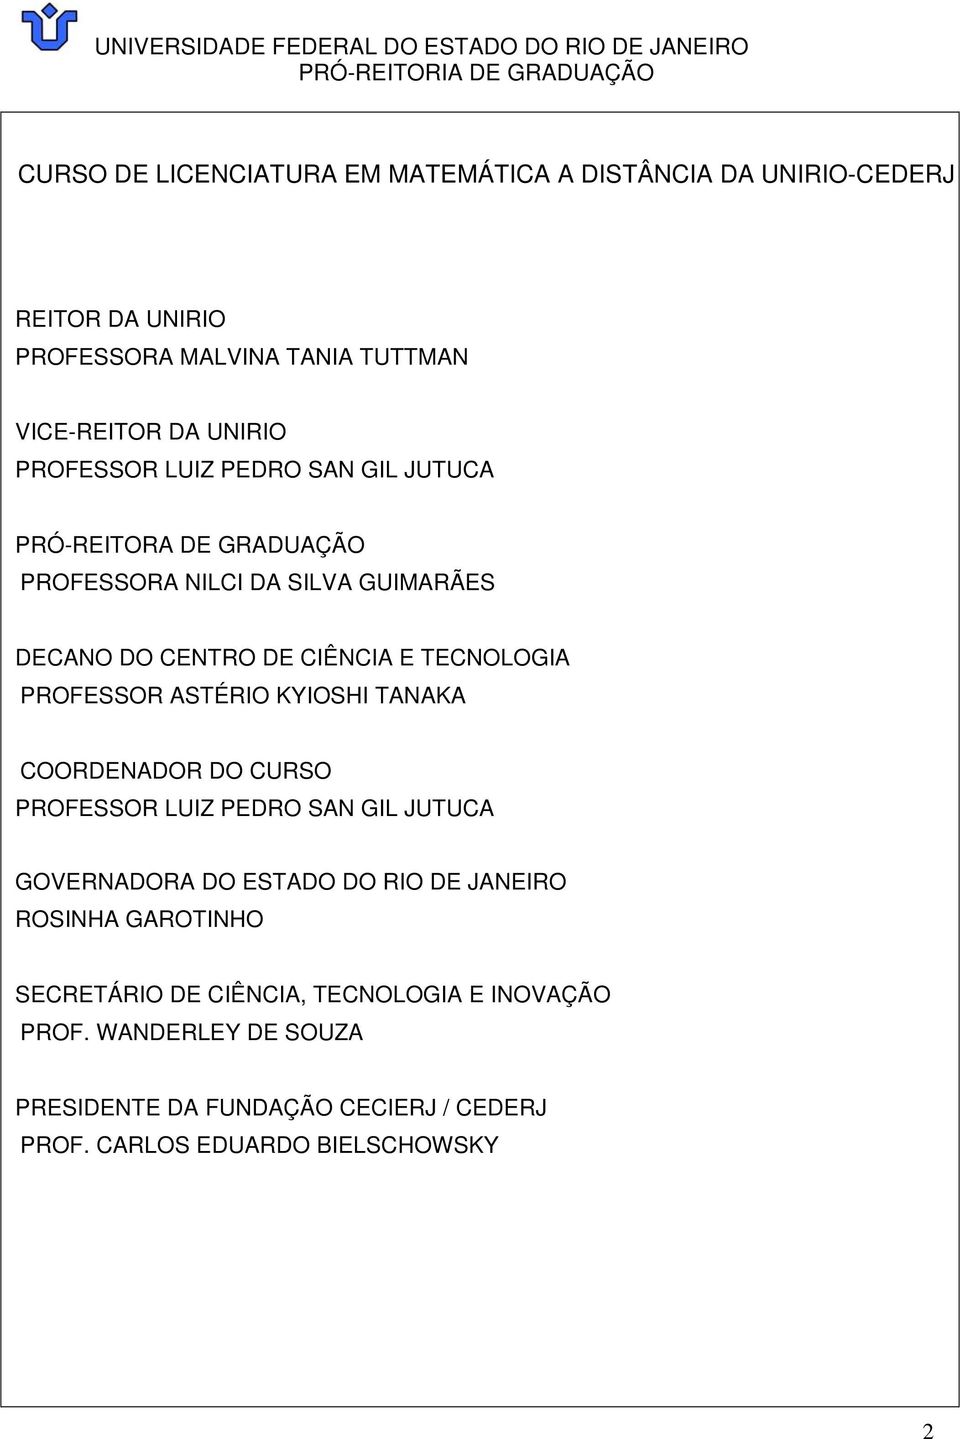 PROFESSOR ASTÉRIO KYIOSHI TANAKA COORDENADOR DO CURSO PROFESSOR LUIZ PEDRO SAN GIL JUTUCA GOVERNADORA DO ESTADO DO RIO DE JANEIRO ROSINHA